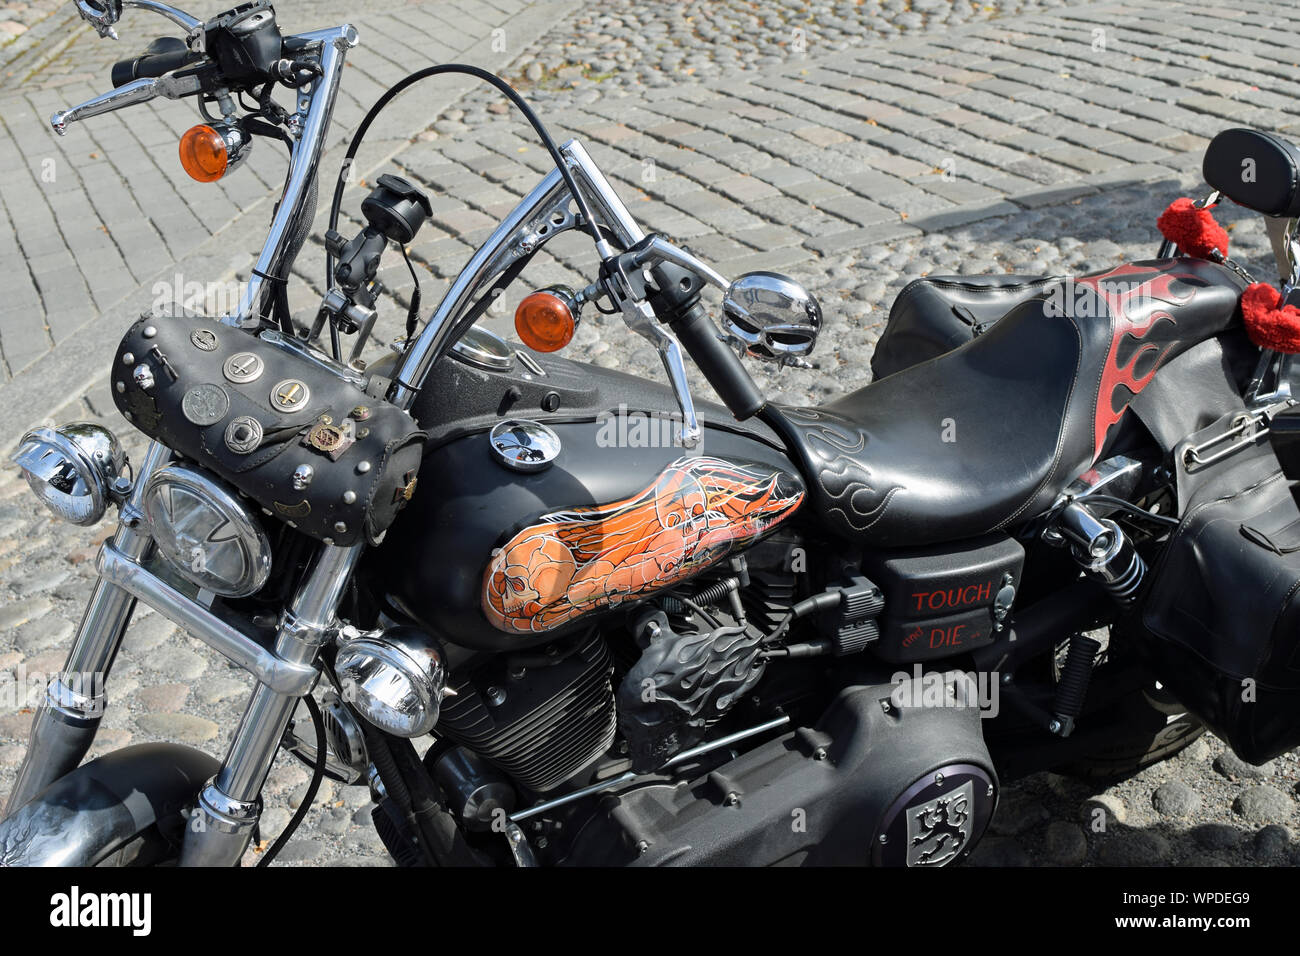 Tampere, Finlandia - 31 agosto 2019: Personalizzato moto al bike show Mansen Mäntä Messut (Tampere fiera del pistone in inglese) con il tema del cranio. Foto Stock